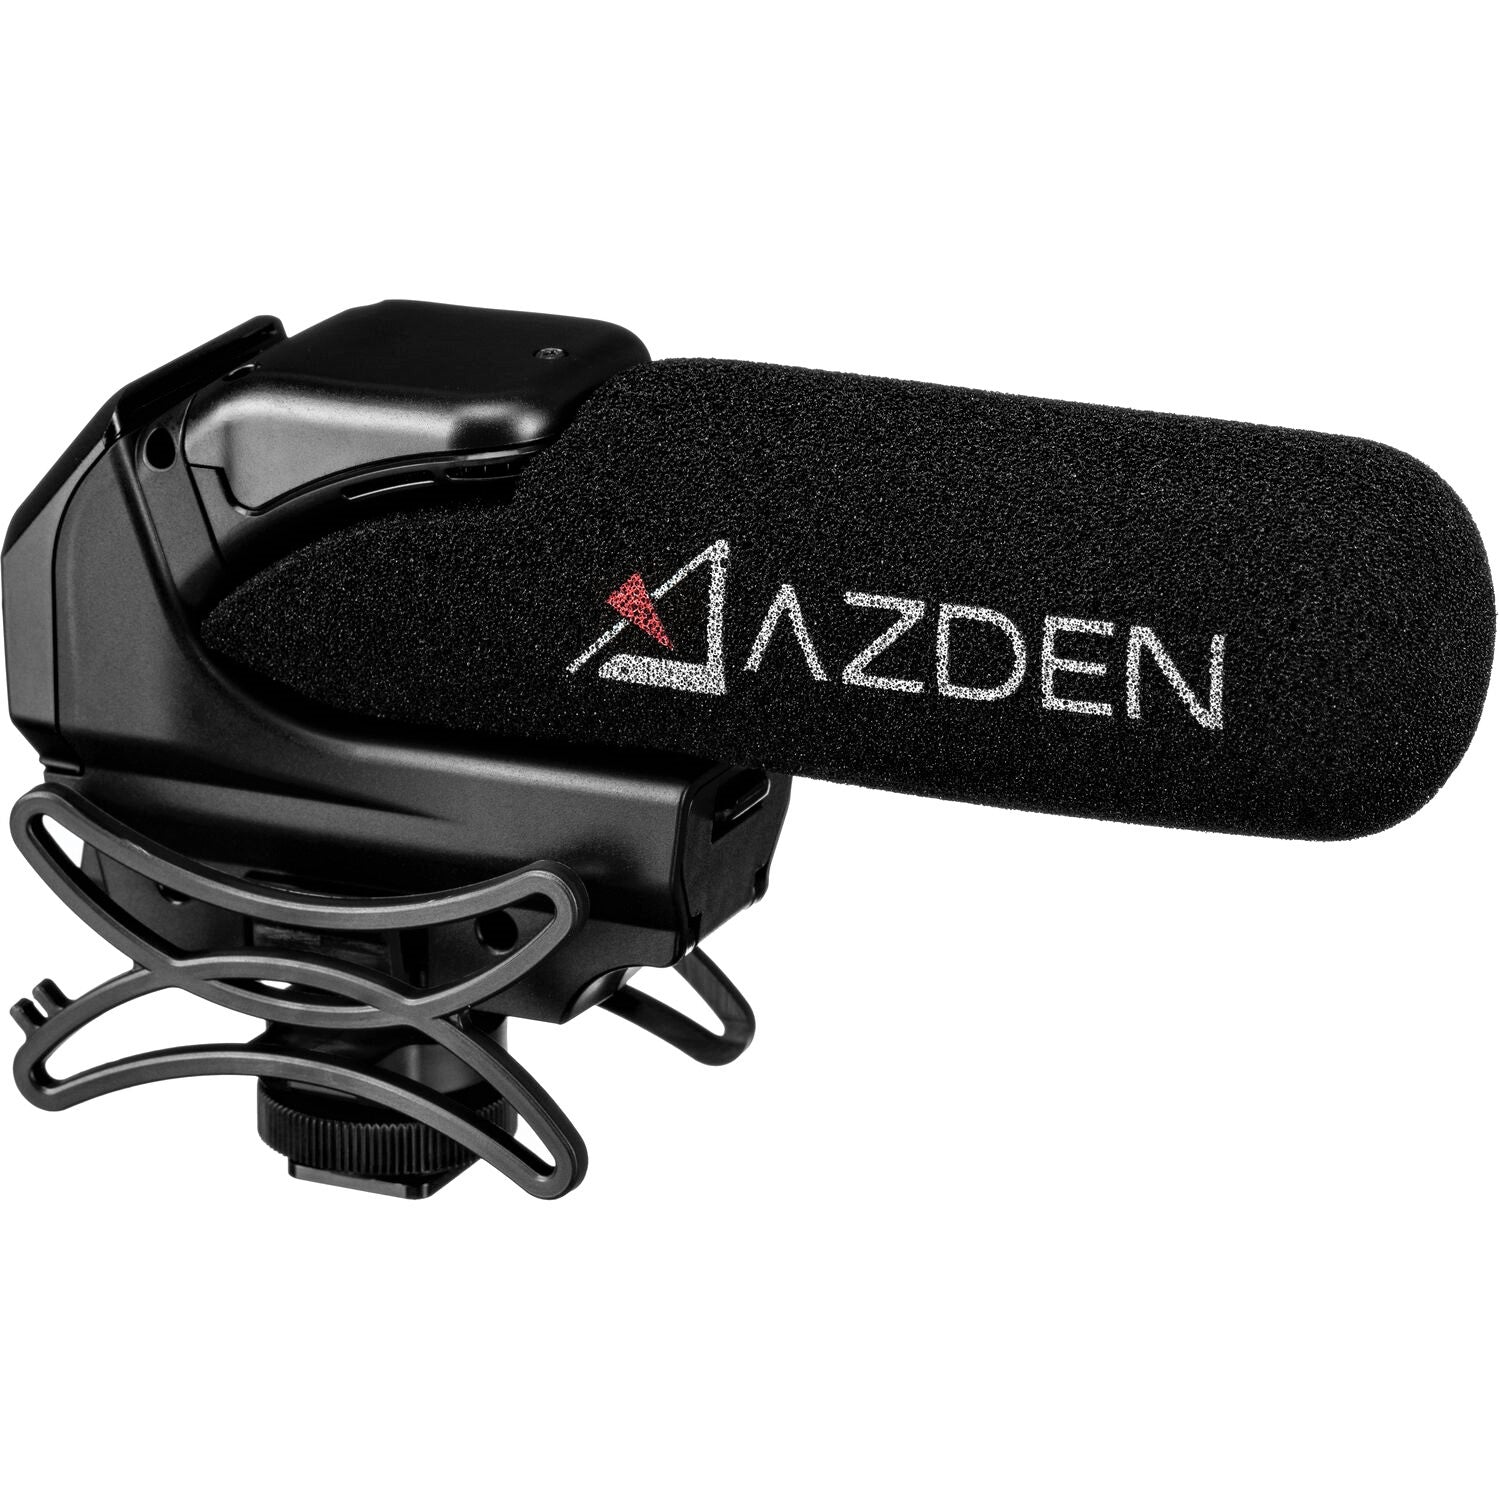 Azden Powered Shotgun Video Microphone with +20dB Boost